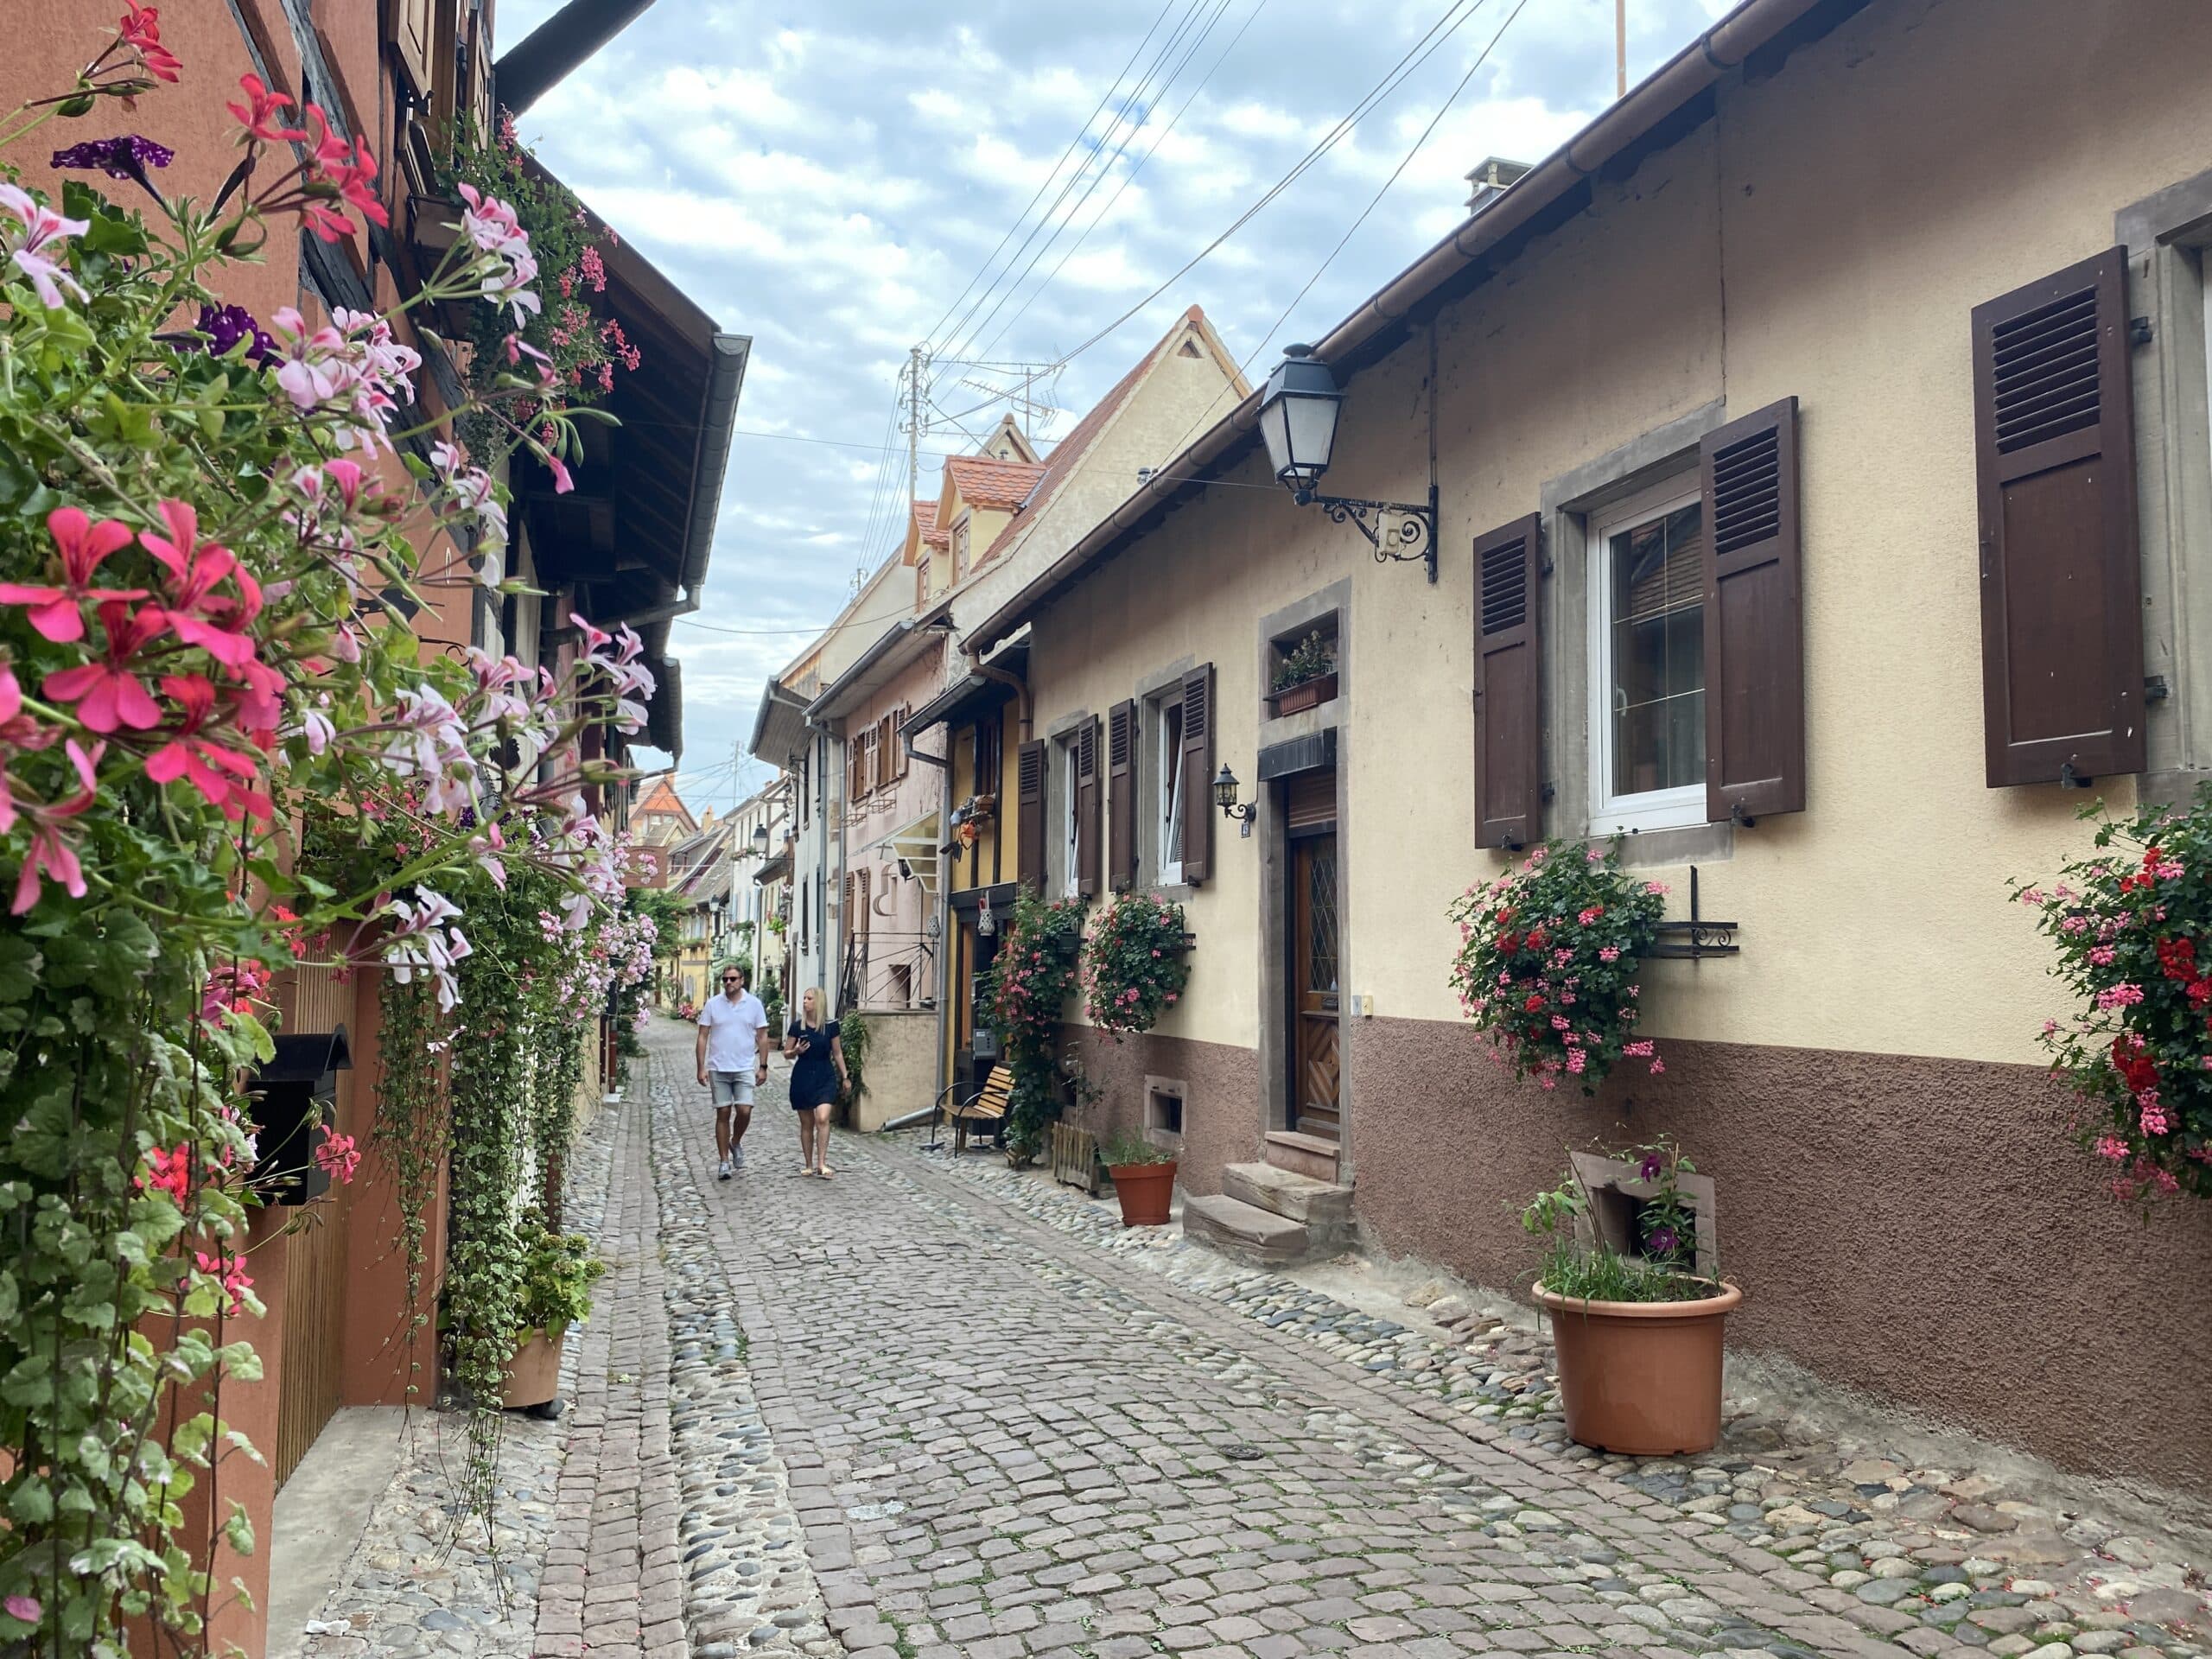 Een straat met kleurrijke huisjes, kasseien en bloemen.